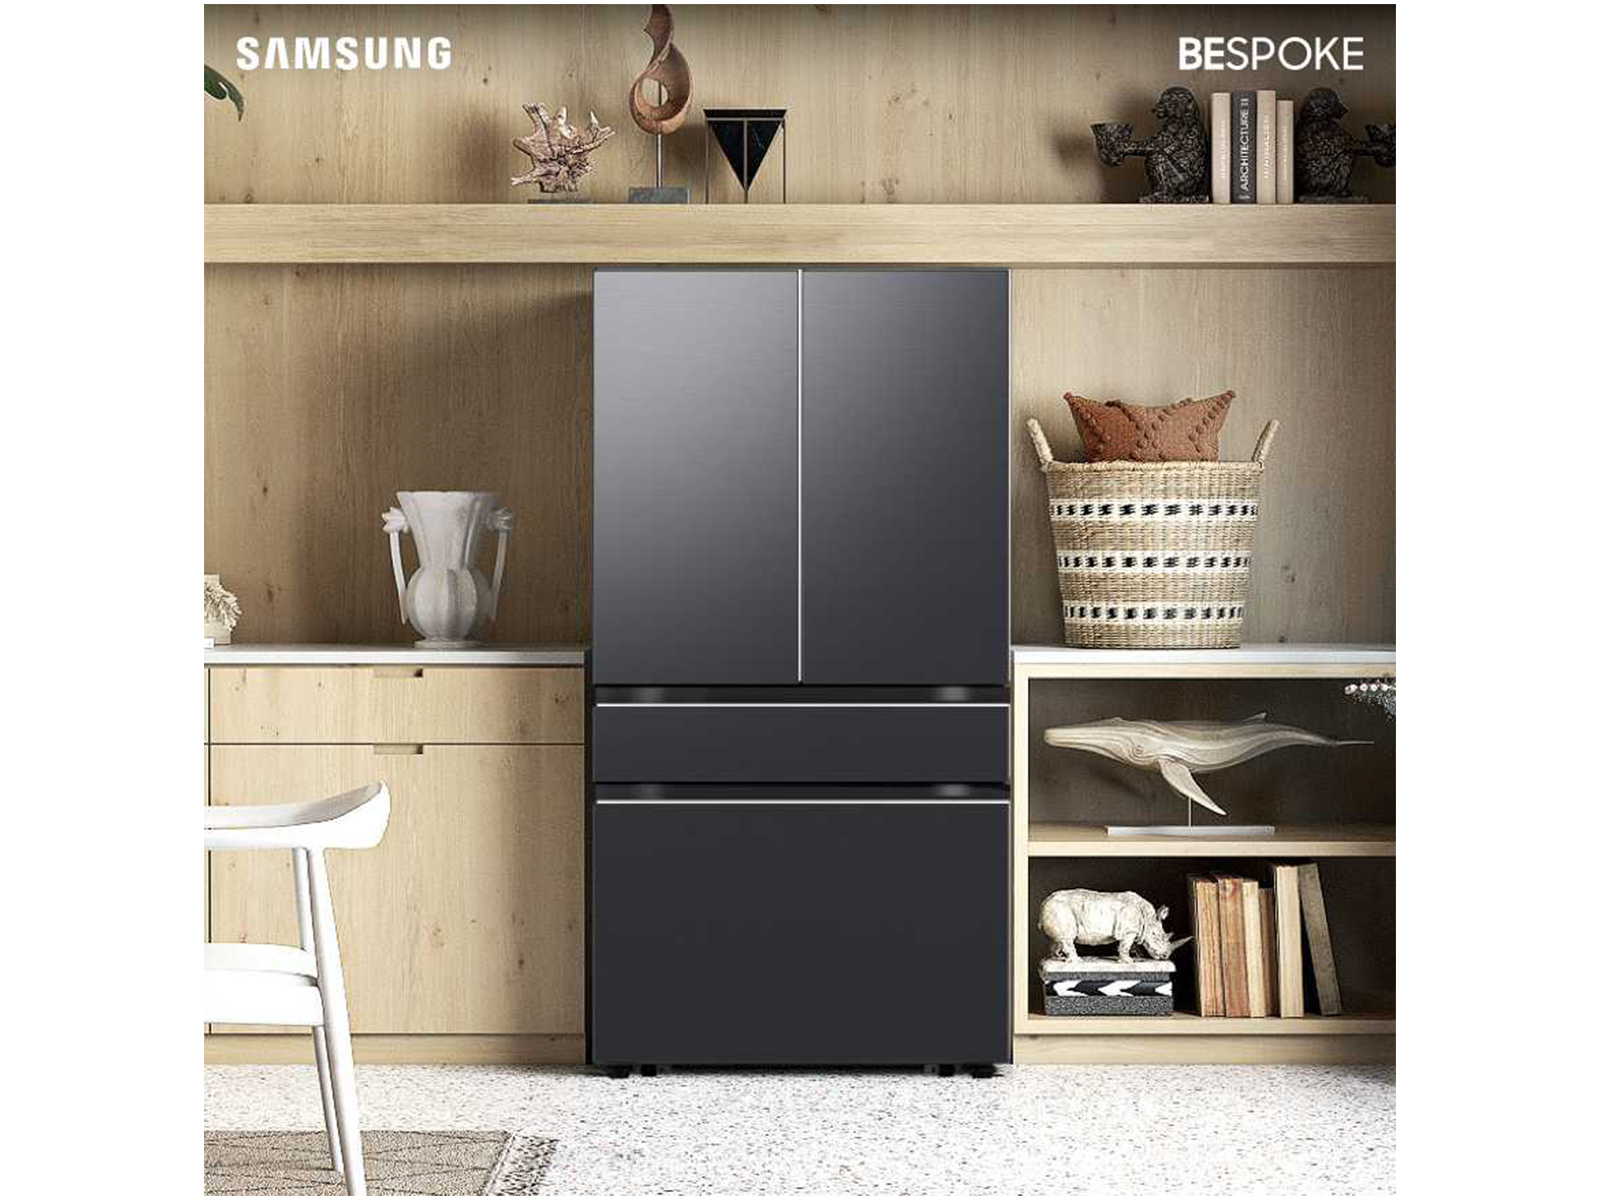 Samsung BESPOKE 4-Door French Door Refrigerator (23 Cu. ft.) with Beverage Center in Stainless Steel